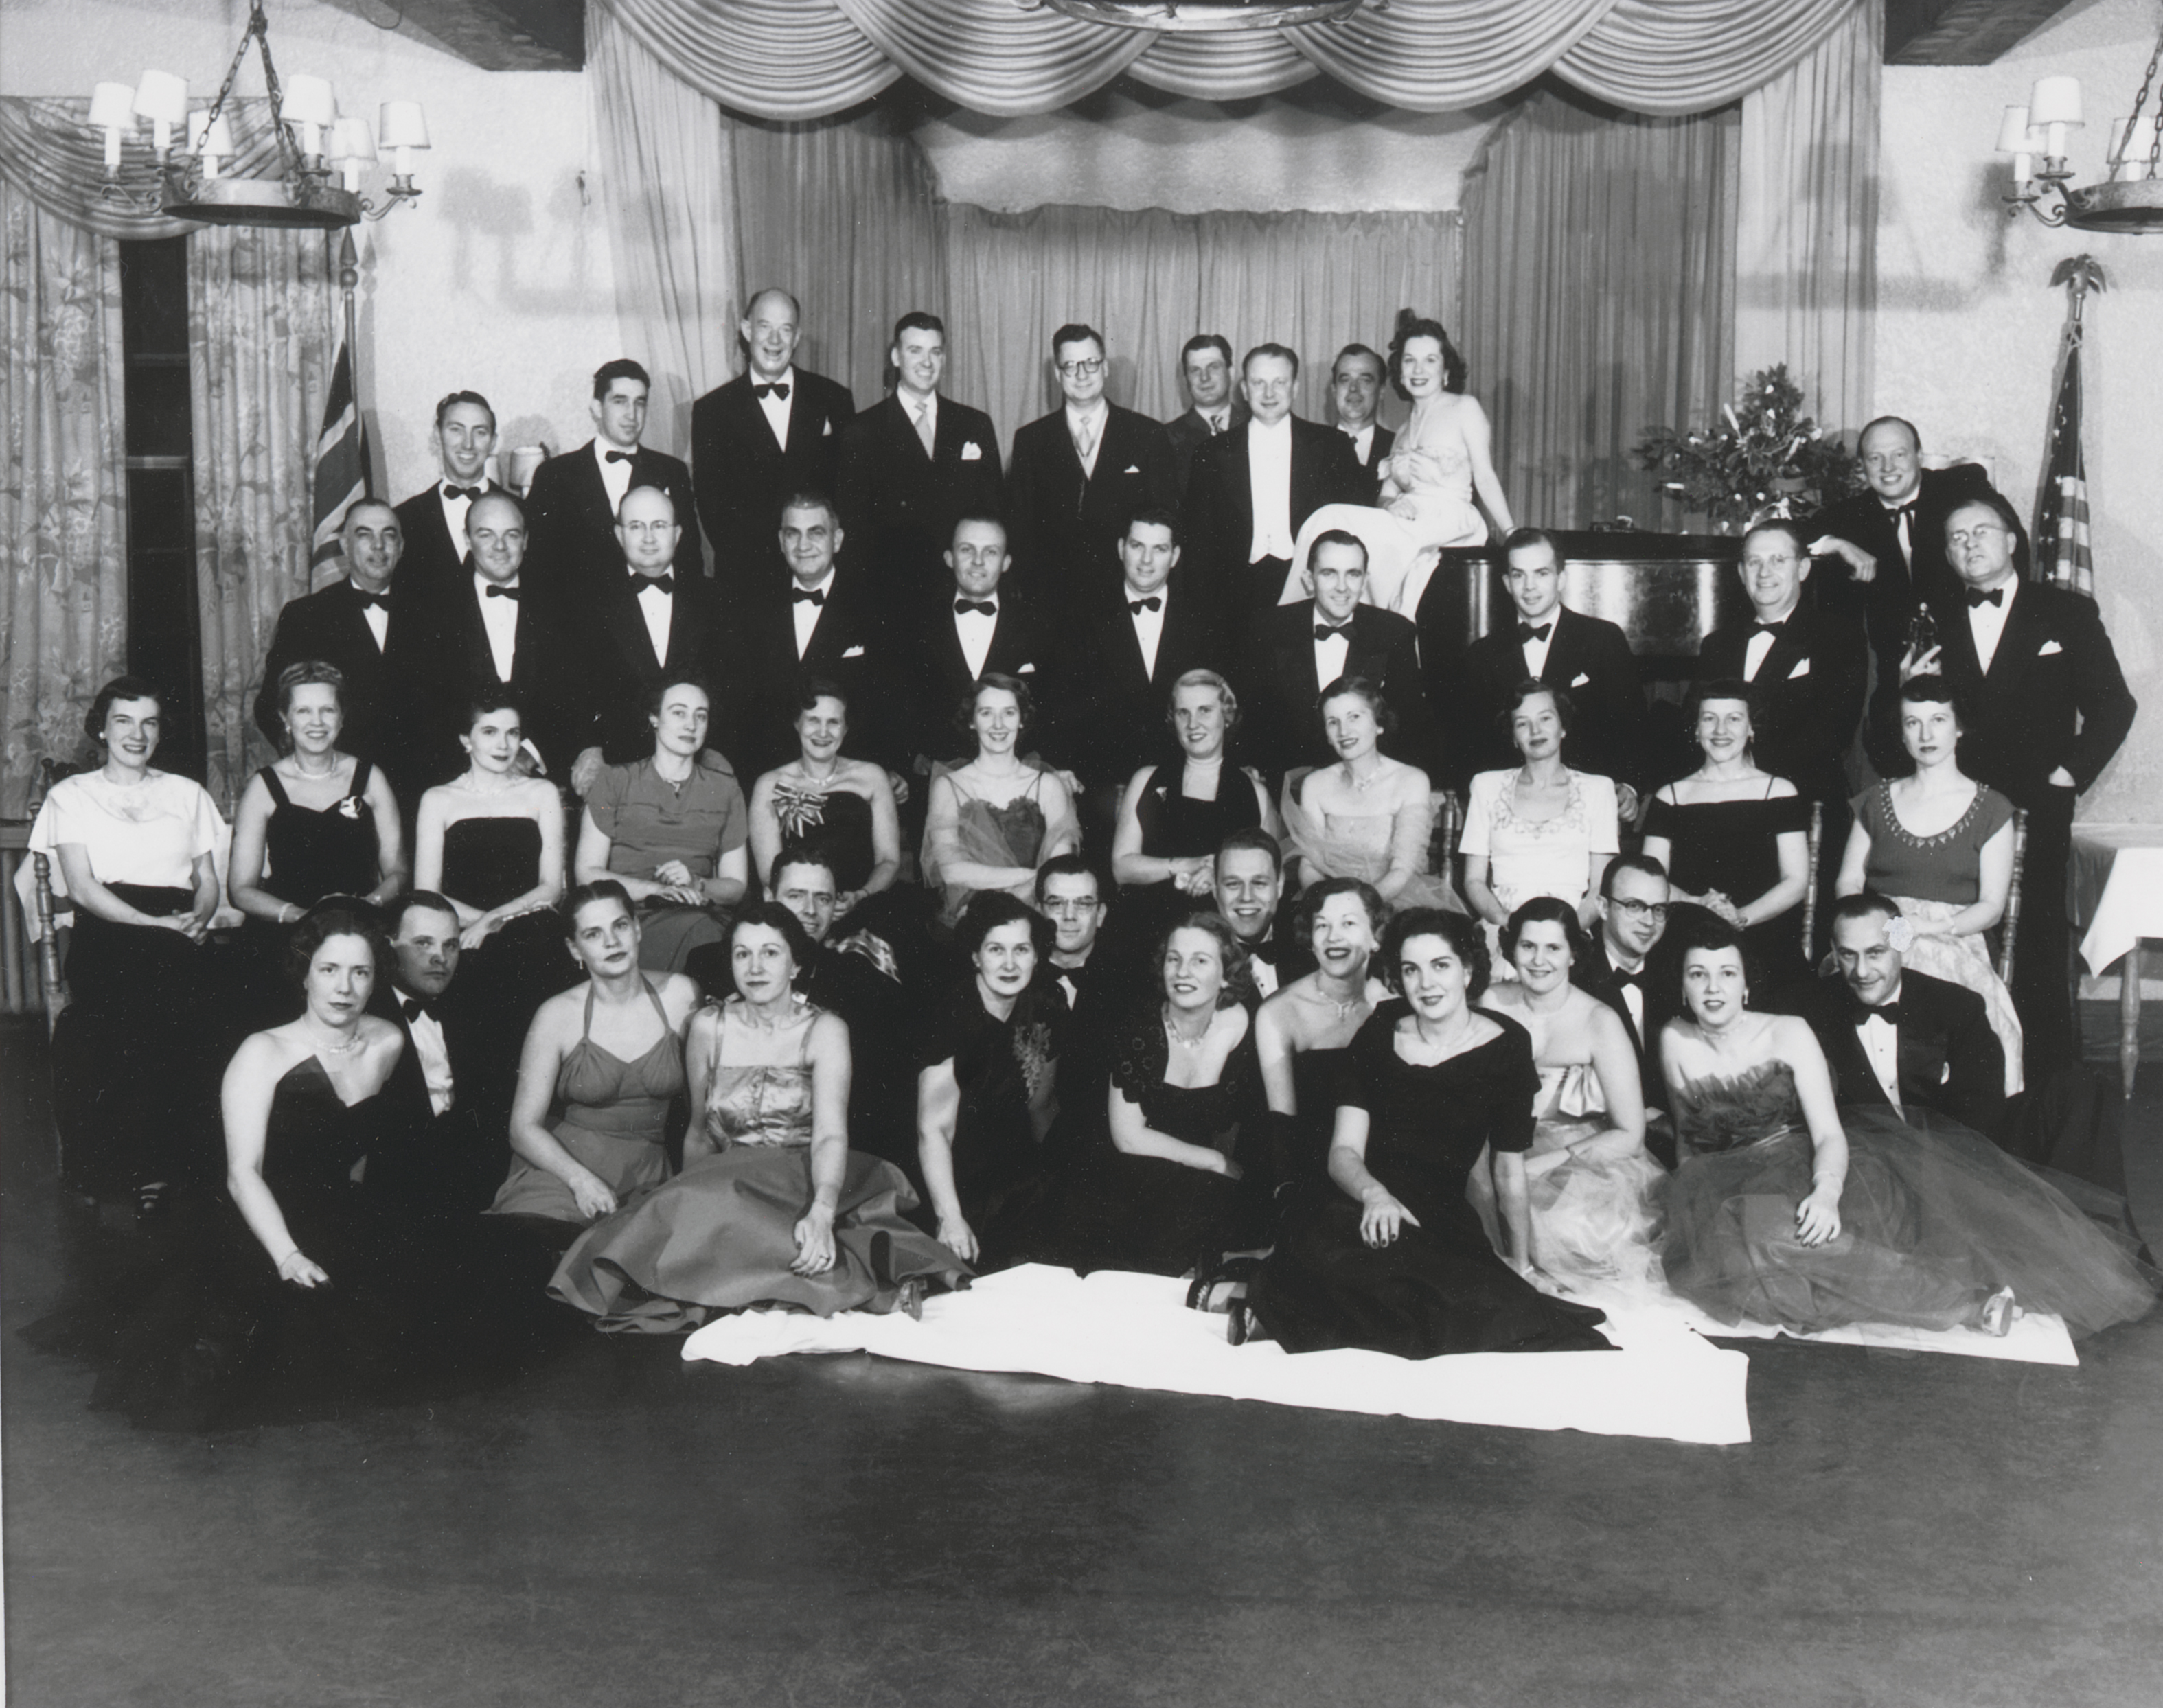 St. Clair River Dance Club, 1950's